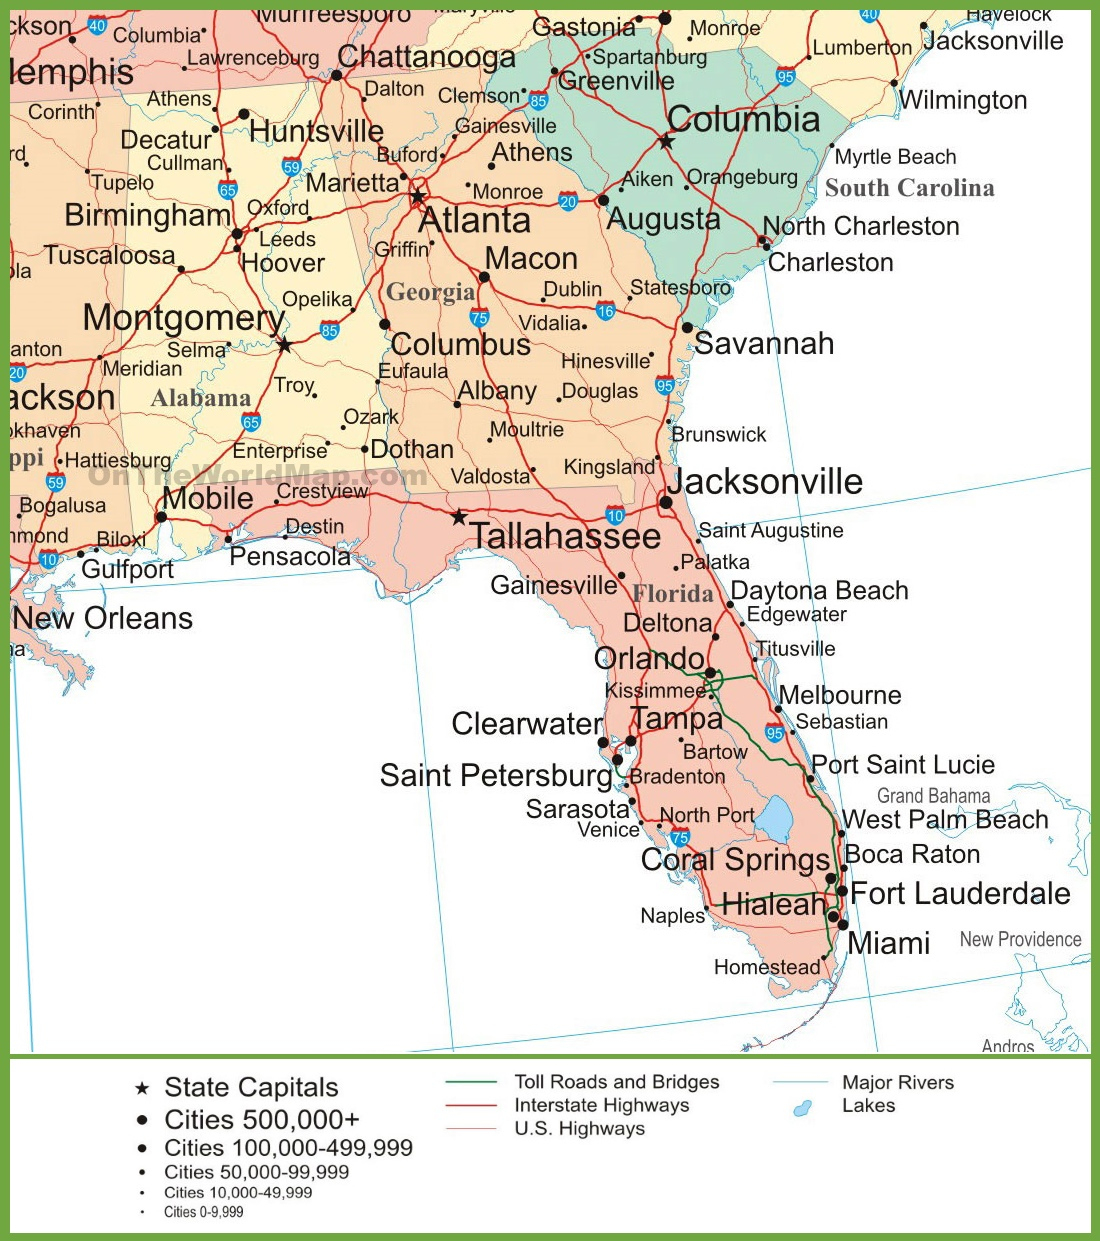 Map Of Alabama, Georgia And Florida - Alabama Florida Coast Map